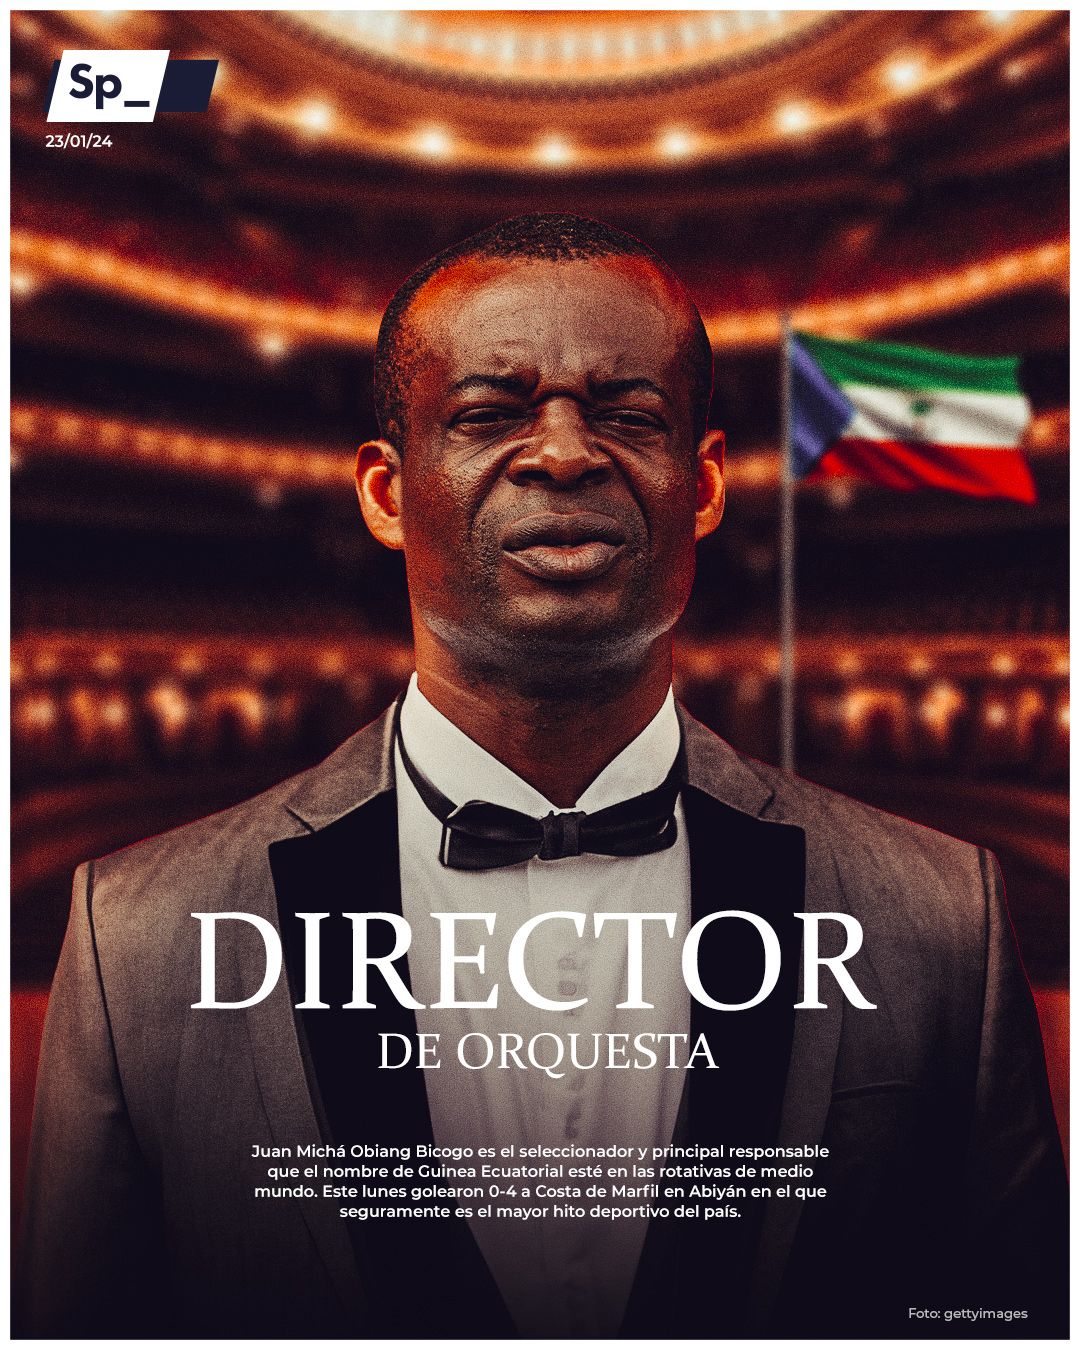 ‘Director de orquesta’